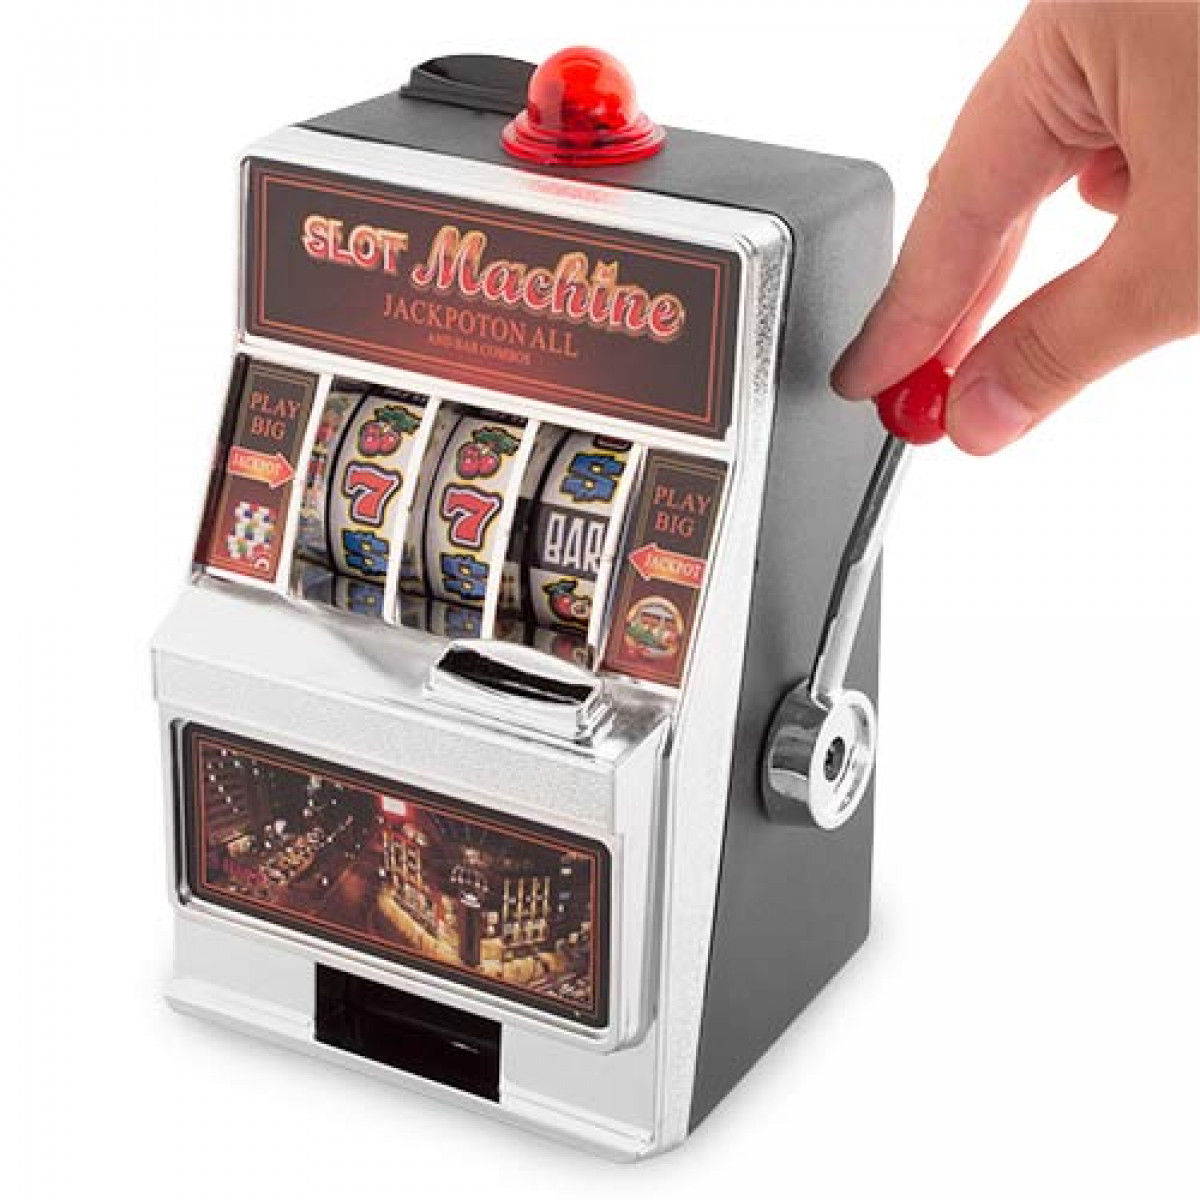 Salvadanaio A Forma Di Slot Machine Con Luci e Suoni a Batteria Jackpot.